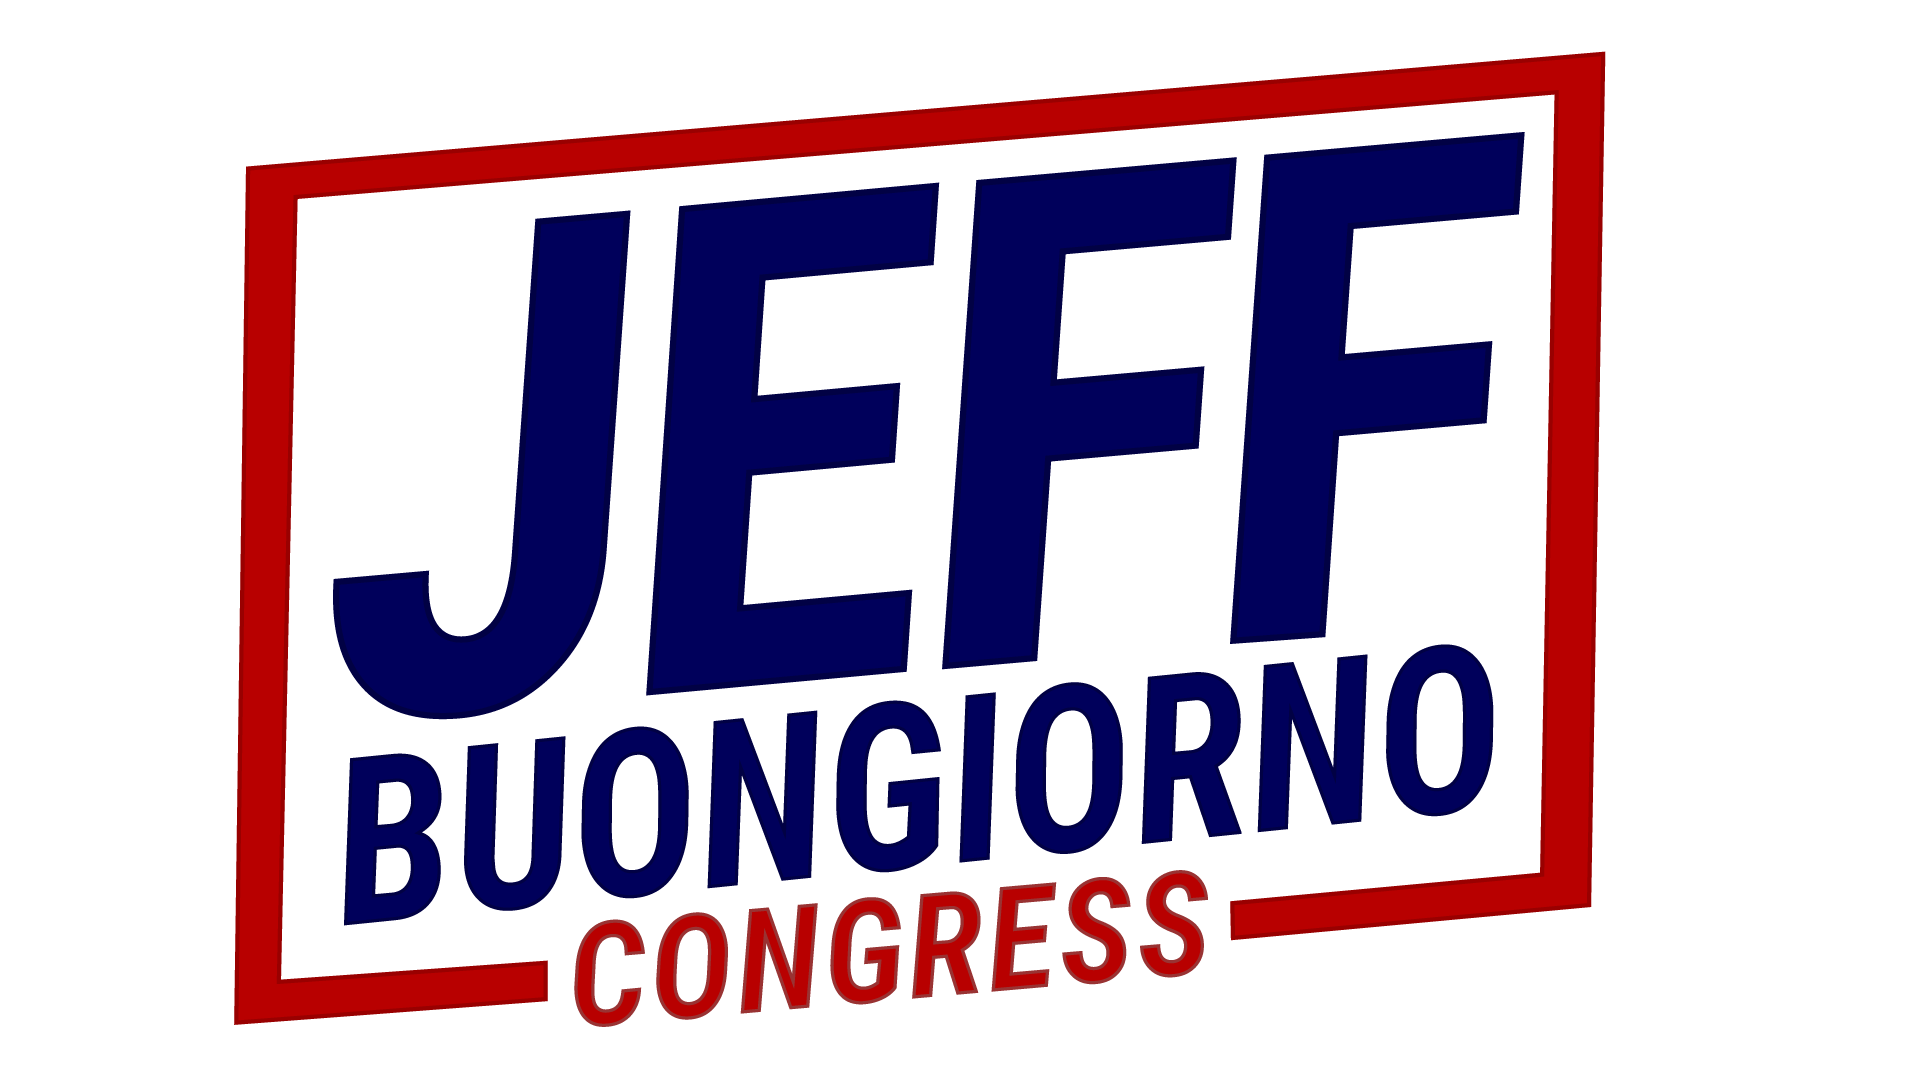 Jeff Buongiorno For Congress